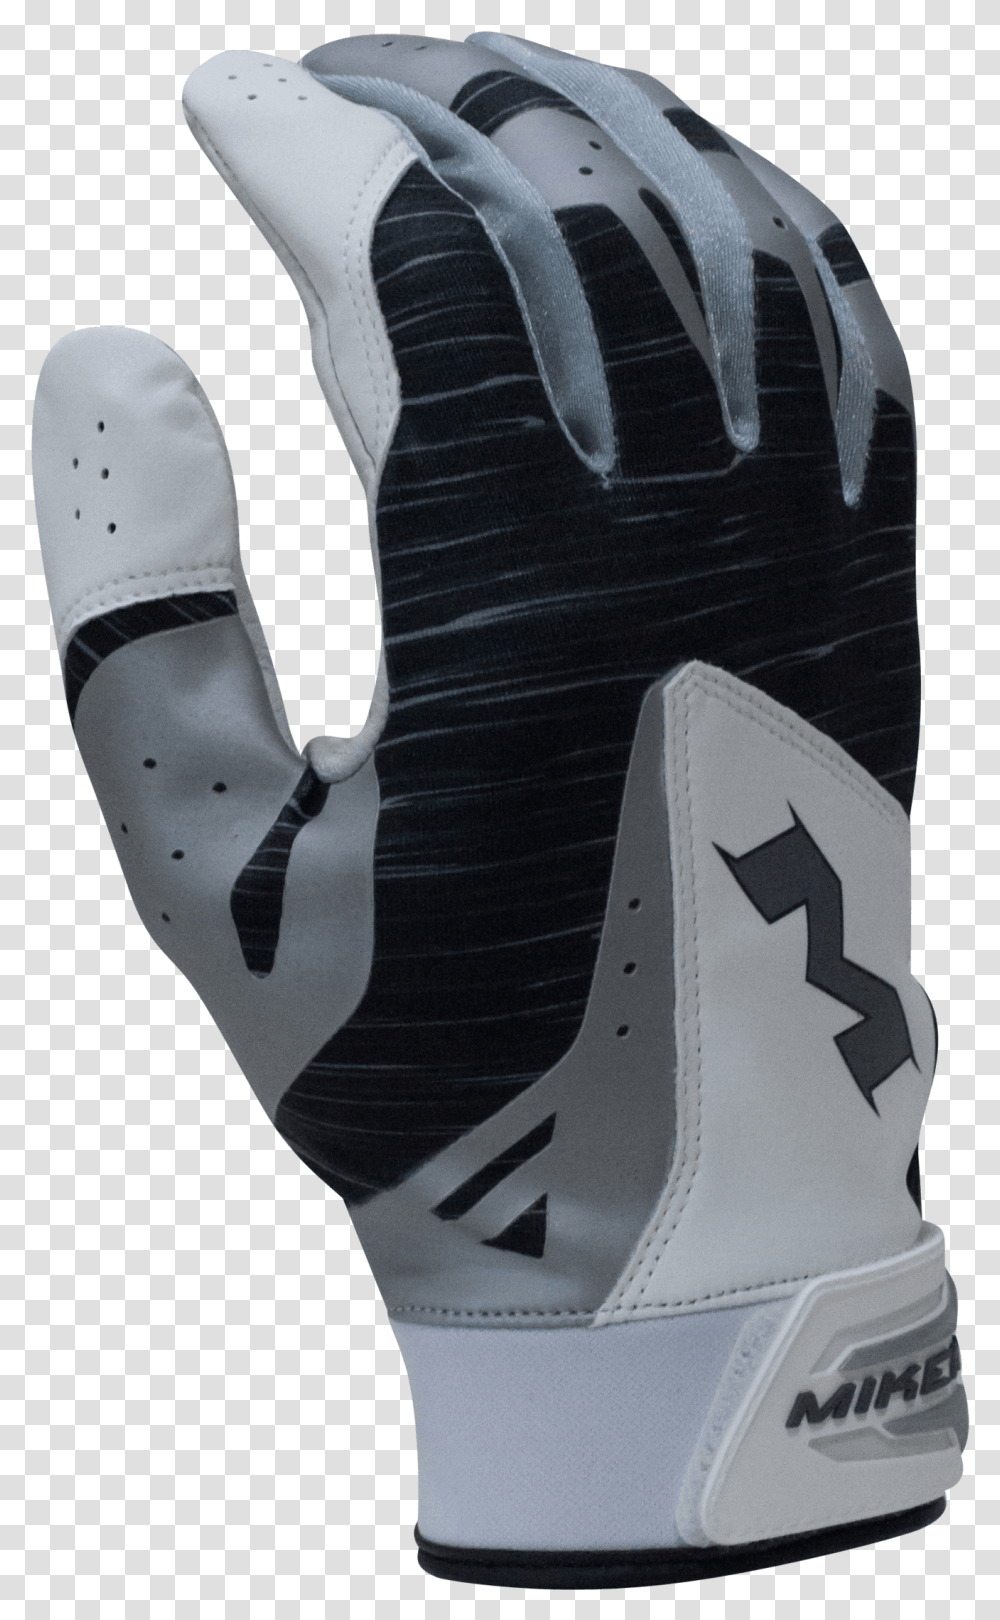 2018 Miken Pro Black Batting Gloves Miken Batting Gloves, Apparel, Footwear, Shoe Transparent Png